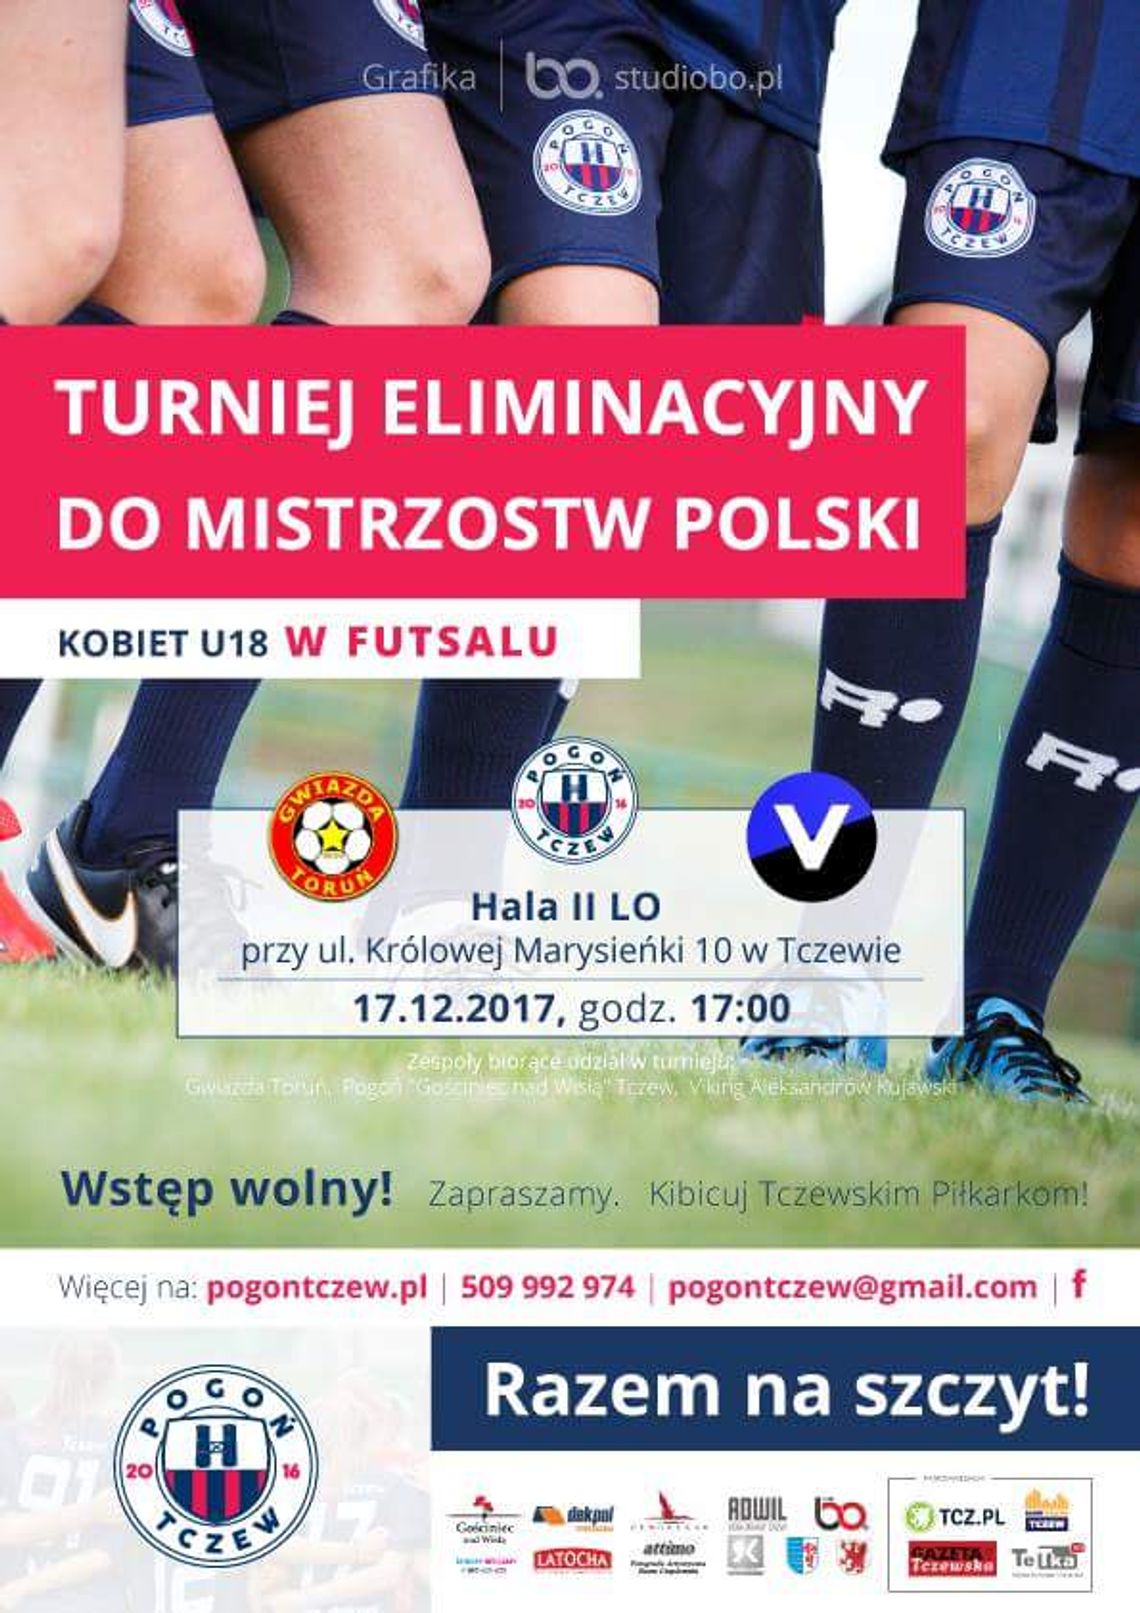 Turniej eliminacyjny do Mistrzostw Polski